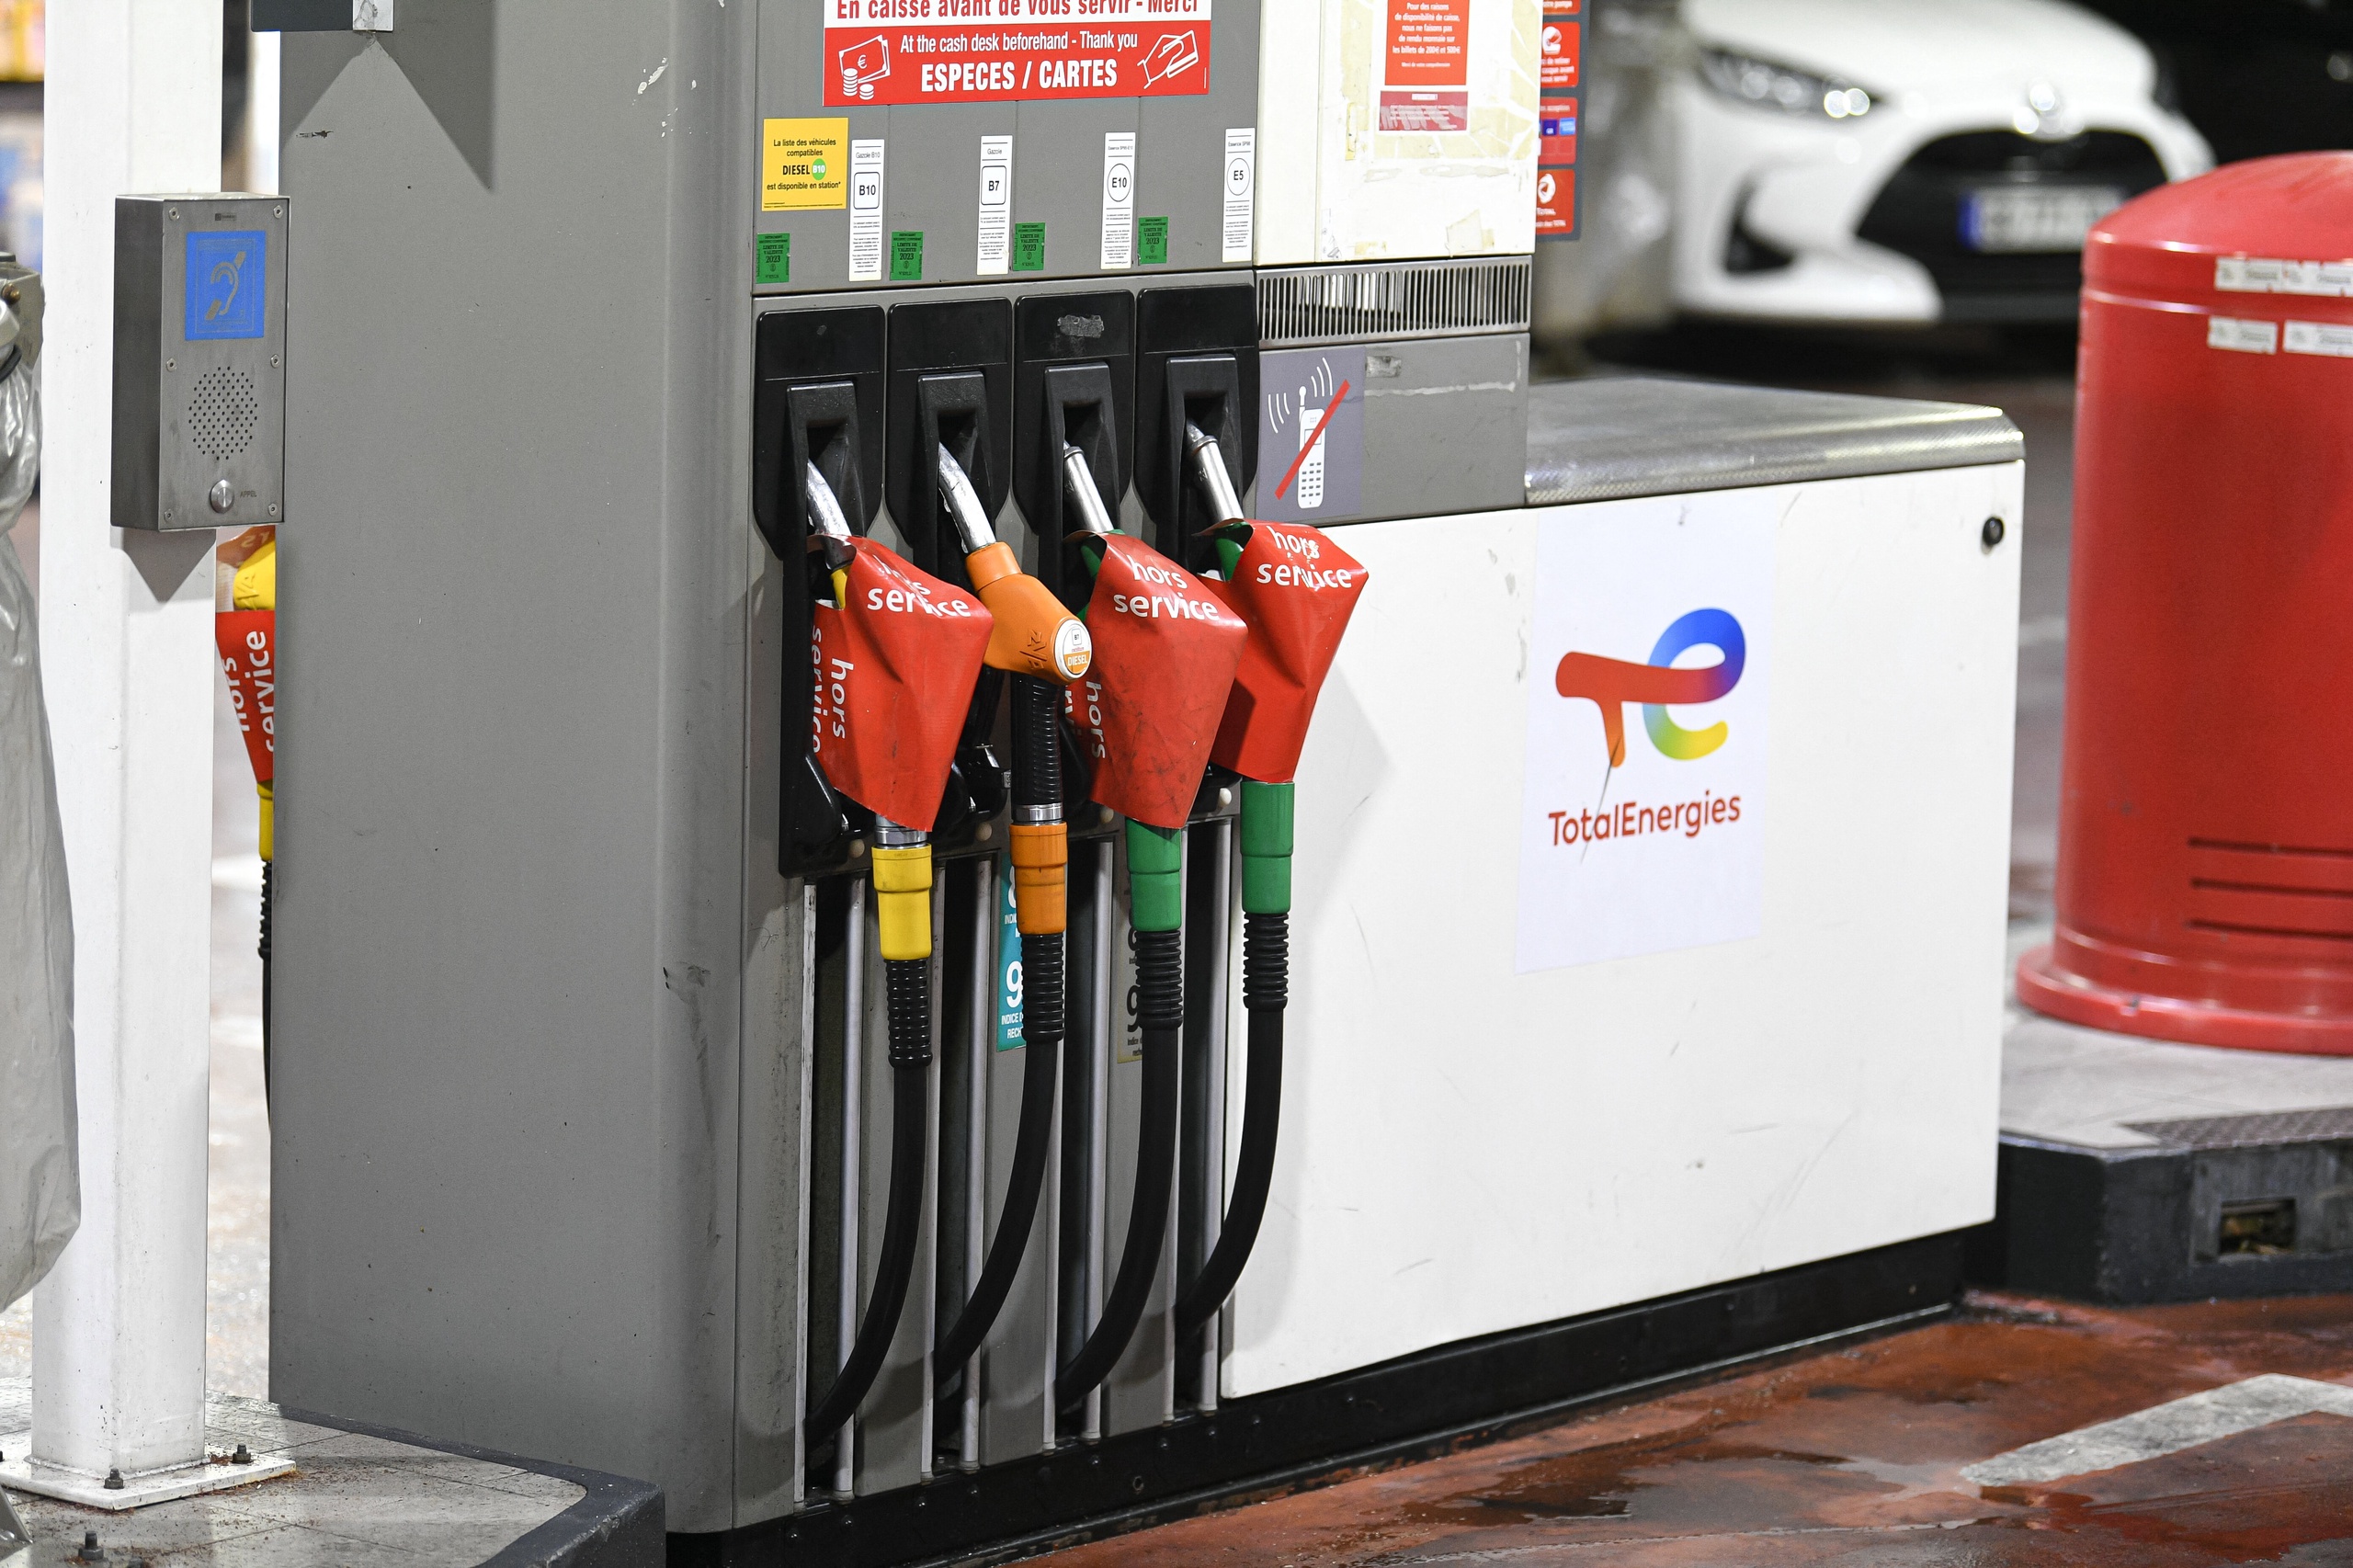 De prijs voor benzine en diesel is sinds vrijdag weer onder de 2 euro per liter gezakt. Volgens consumentencollectief UnitedConsumers is de gemiddelde landelijke adviesprijs voor een liter Euro95 nu 1,997 euro. Voor een liter diesel moet 1,988 euro worden betaald. 